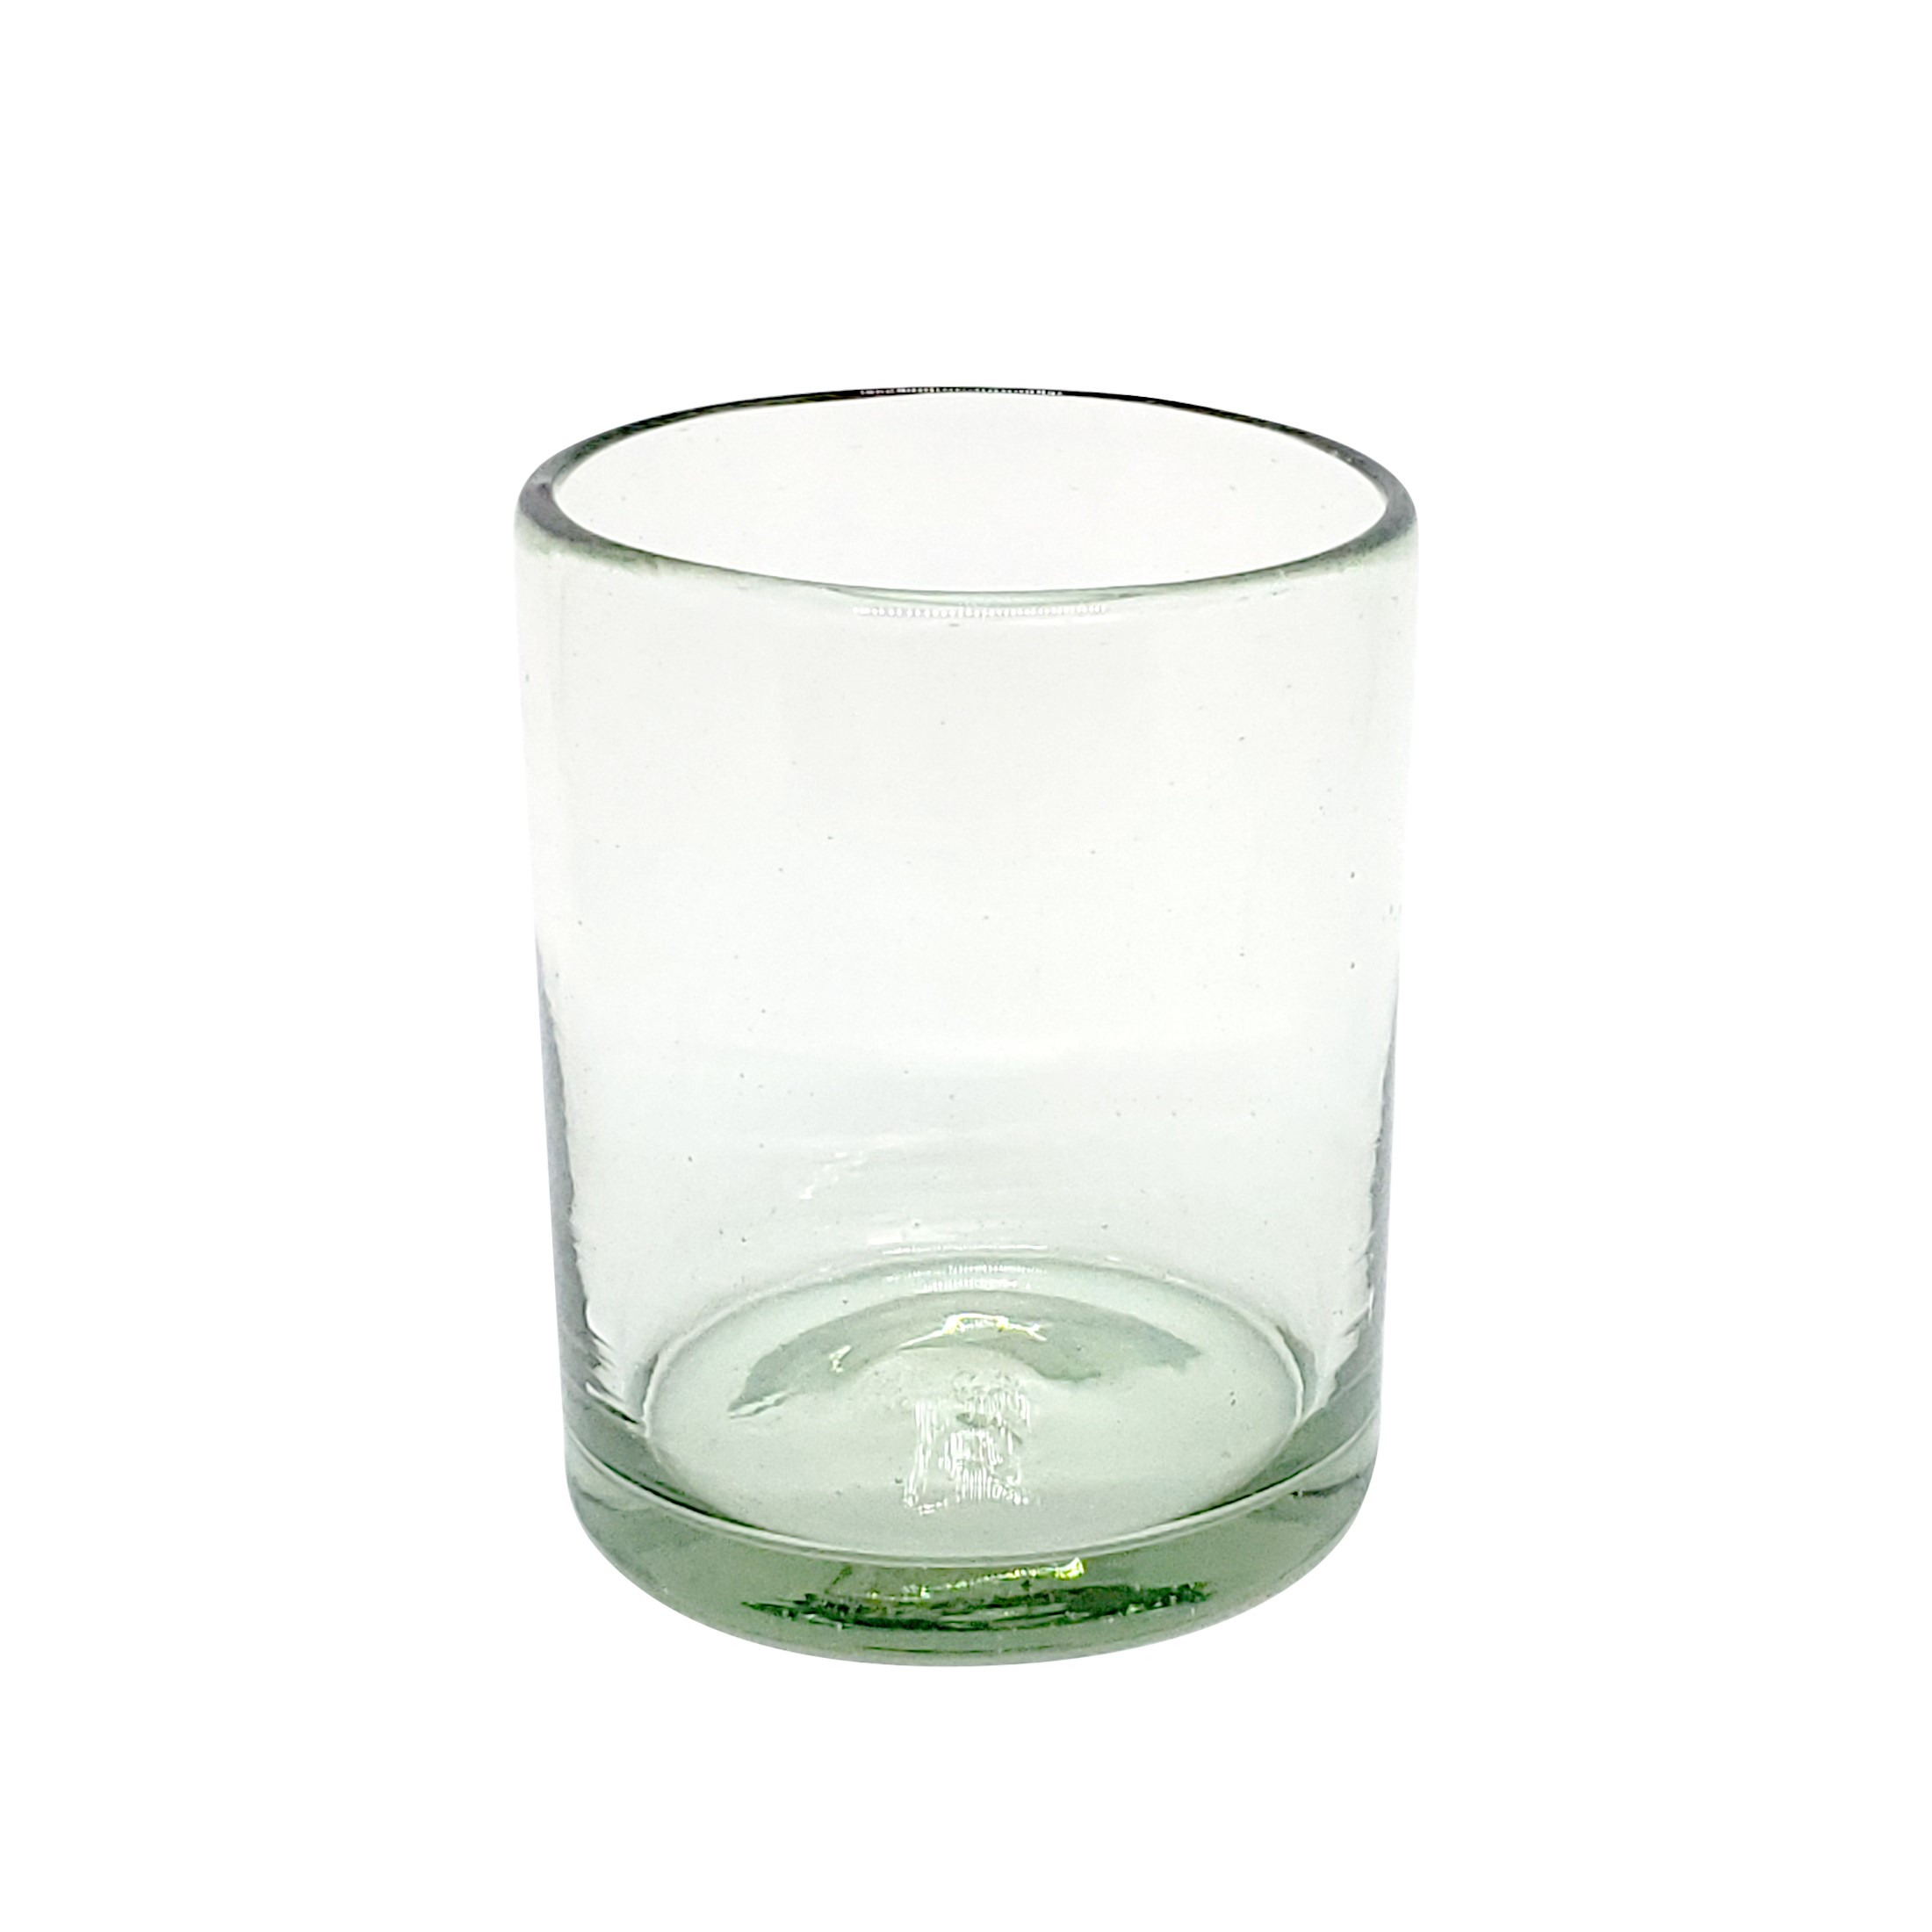 Color Transparente / Juego de 6 vasos chicos transparentes / Para una apariencia más tradicional, éstos vasos de vidrio soplado son creados de manera 100% artesanal.